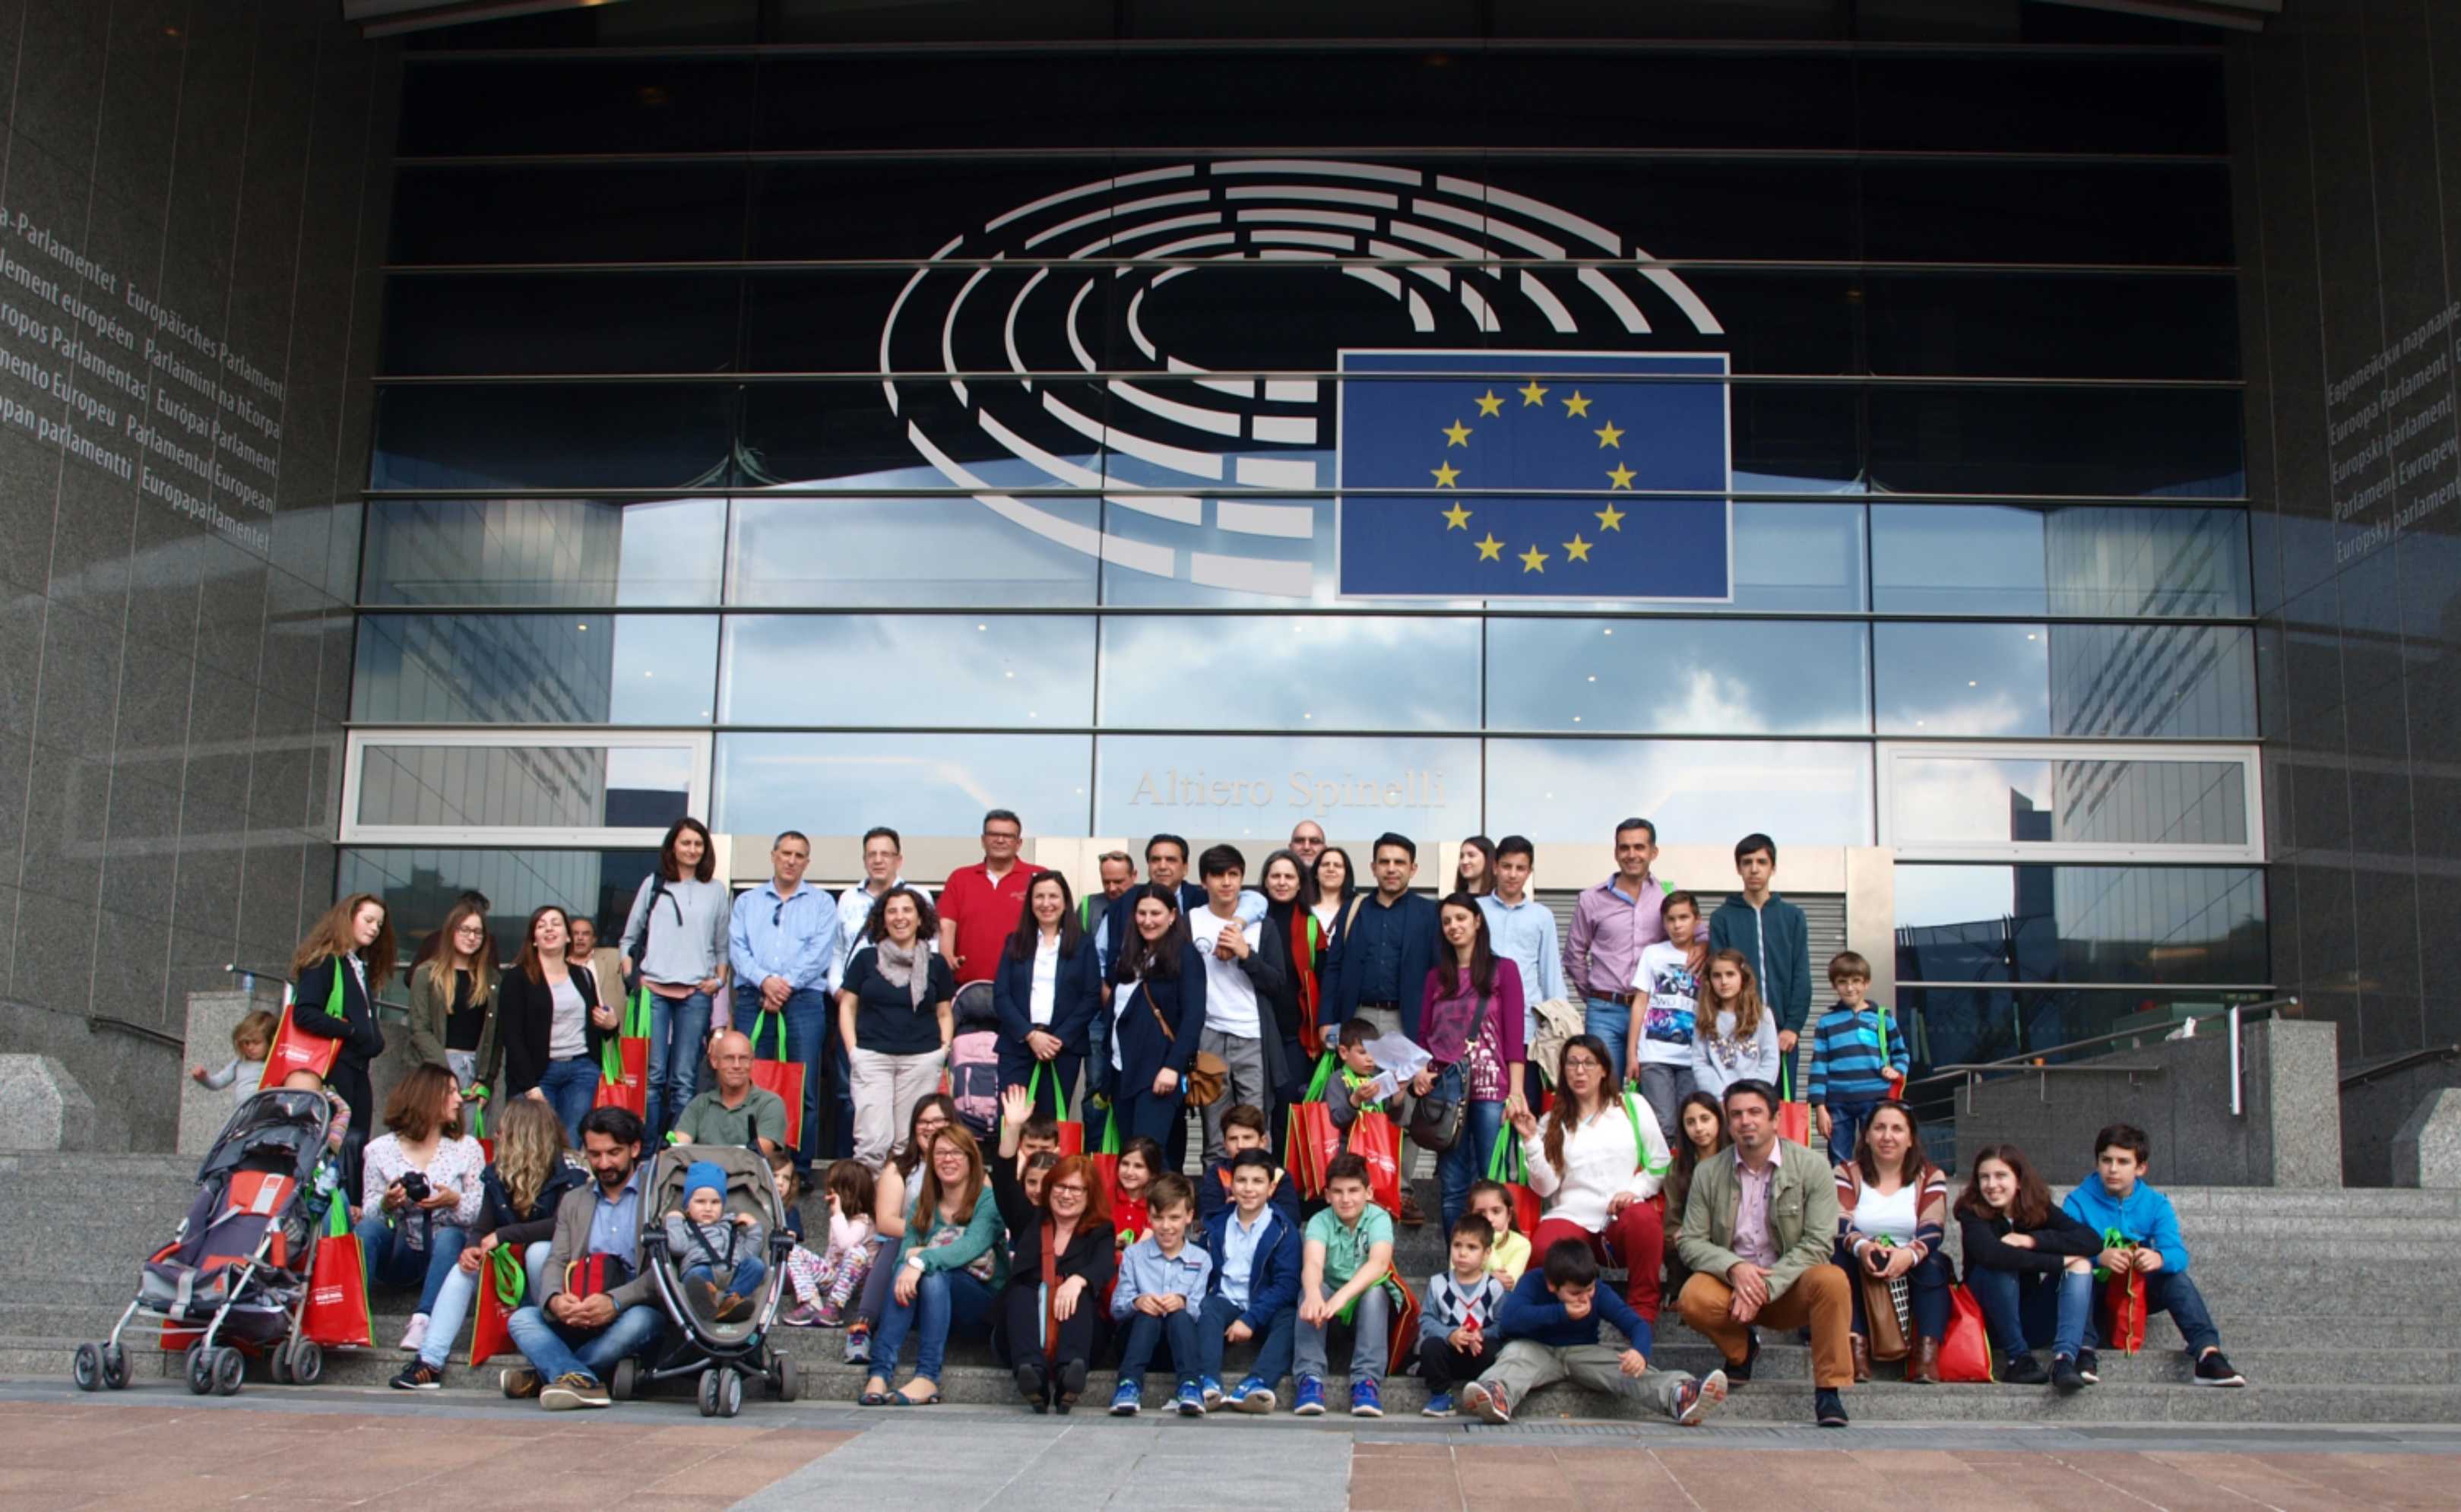 Μαθητές και γονείς από το ελληνικό σχολείο του Giessen της Γερμανίας στο Ευρωπαϊκό Κοινοβούλιο